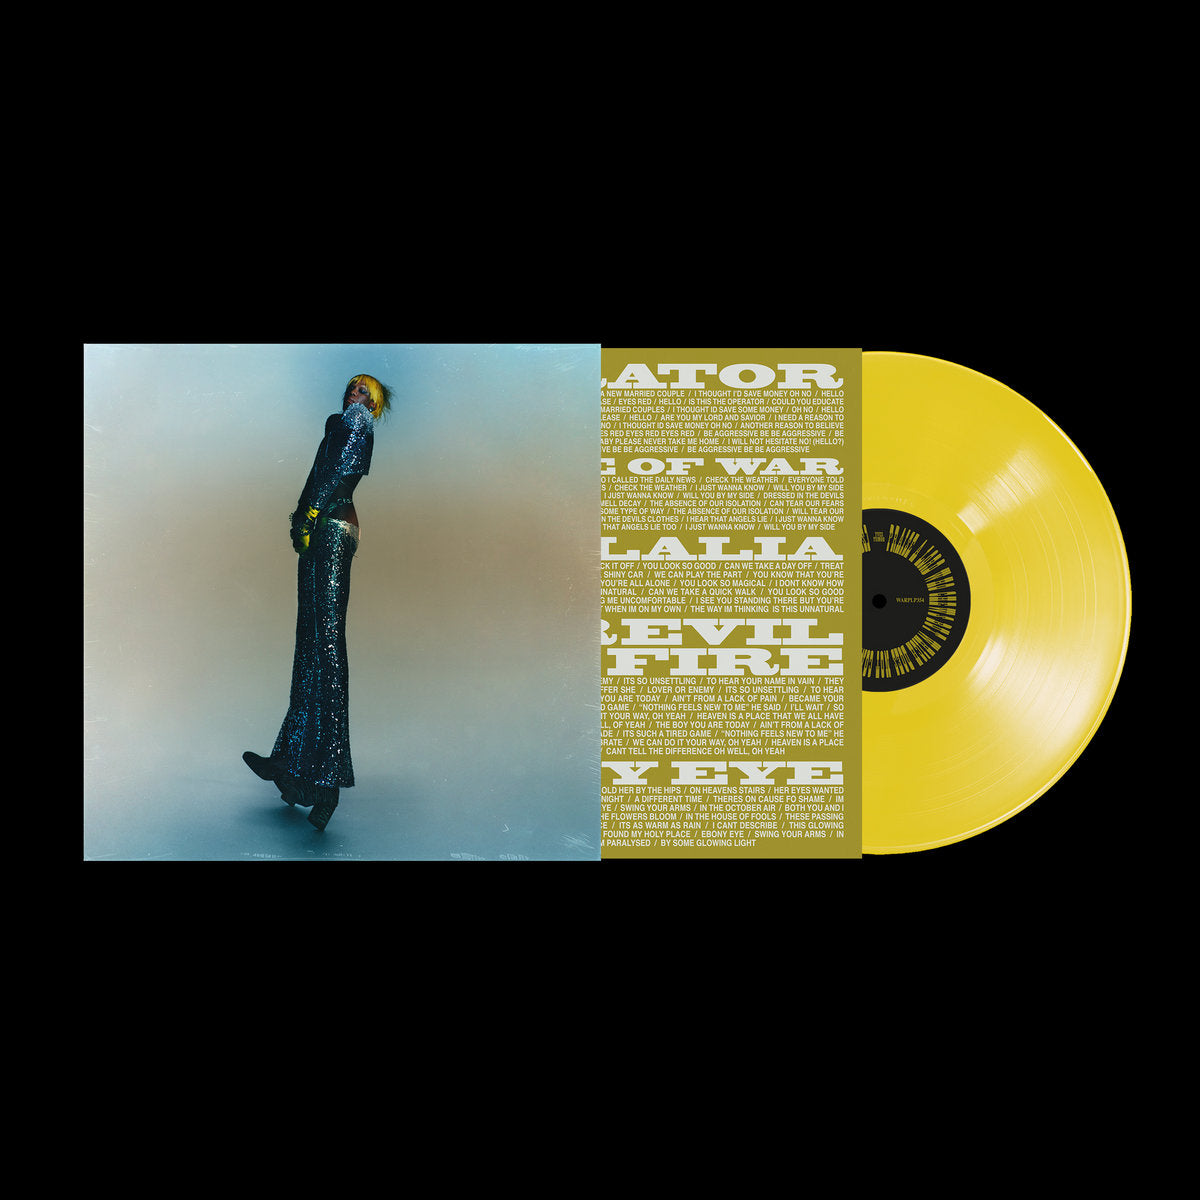 Noah Kahan - Stick Season: Translucent Vinyl 7 Single - Sound of Vinyl